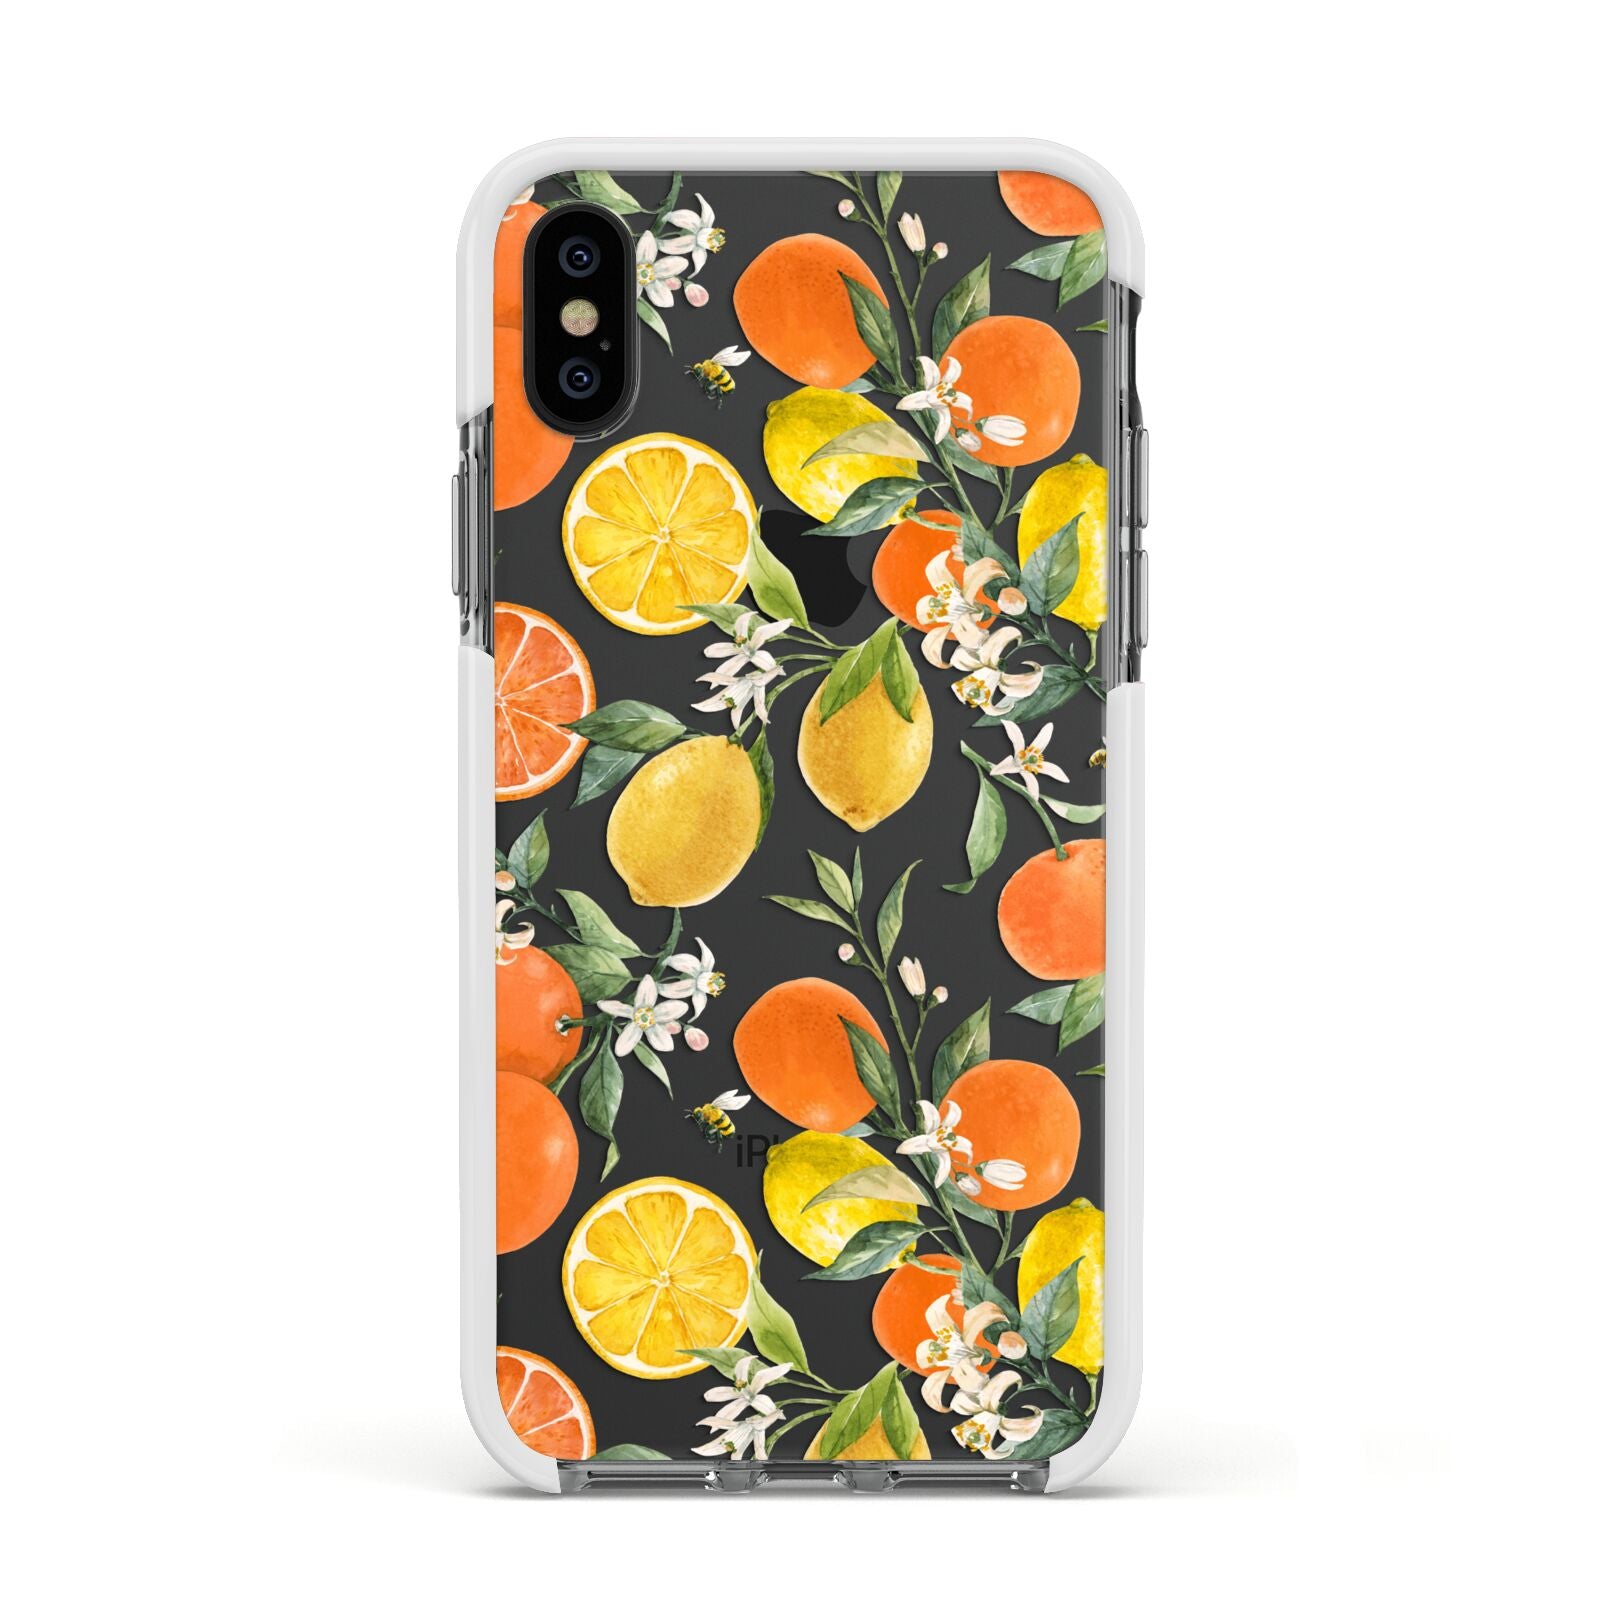 Lemons and Oranges Apple iPhone Xs Impact Case White Edge on Black Phone